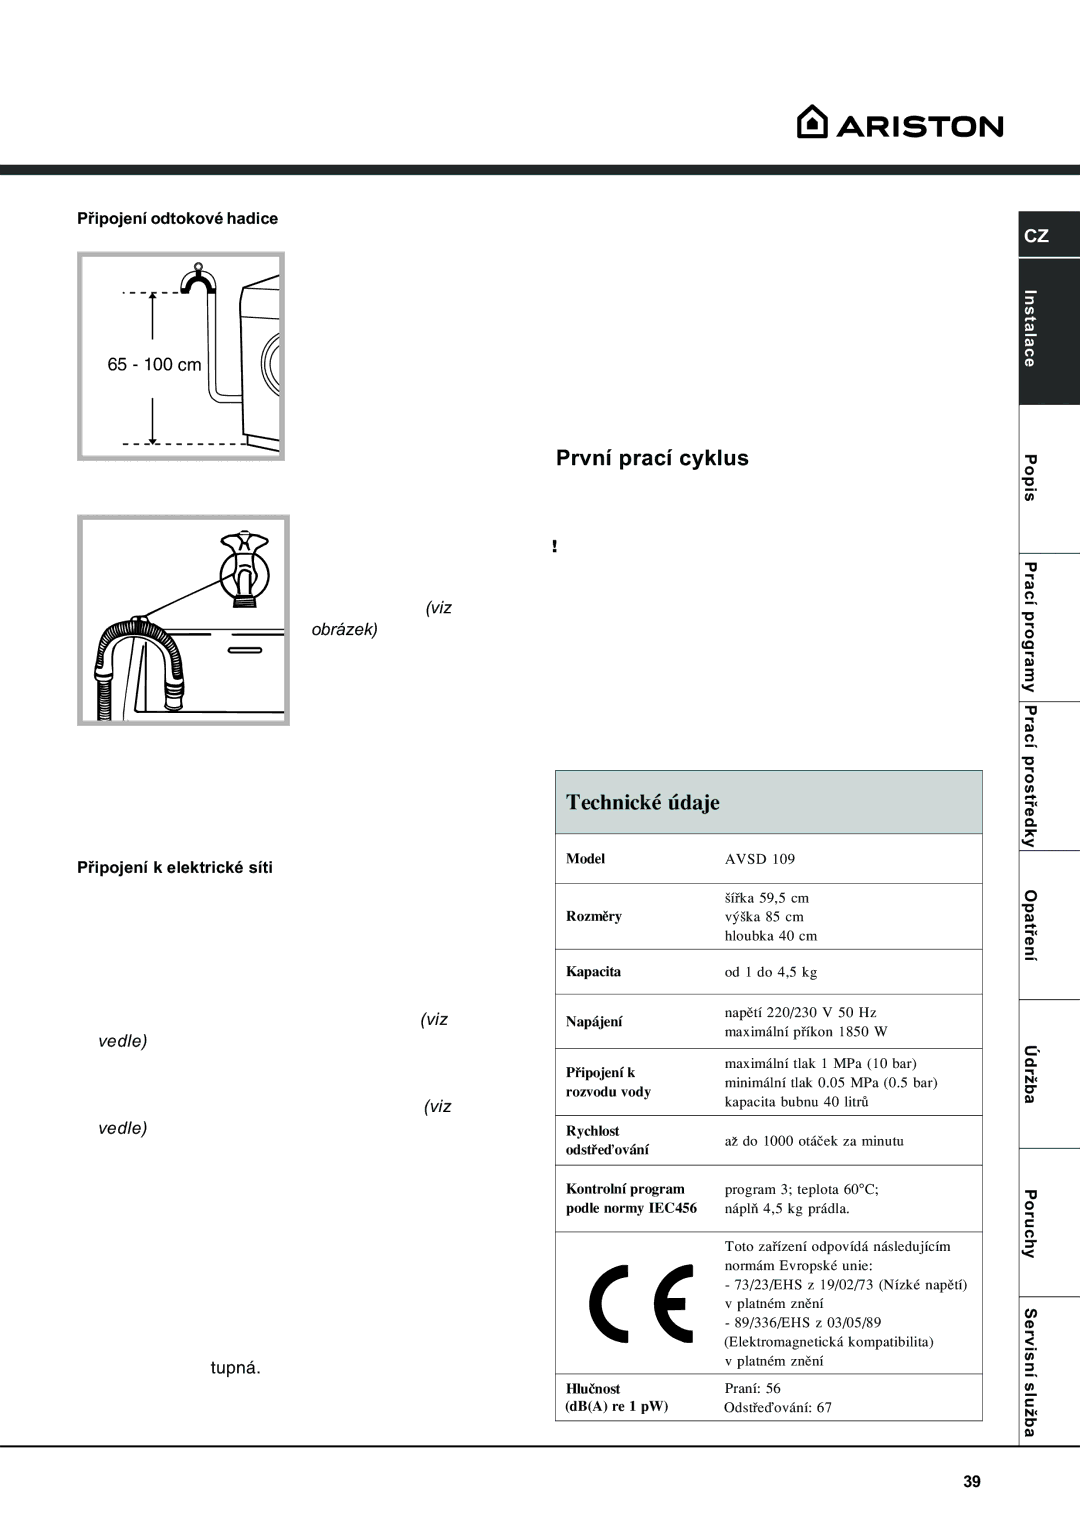 Ariston AVSD 109 manual První prací cyklus, Technické údaje, Pøipojení odtokové hadice, Pøipojení k elektrické síti 